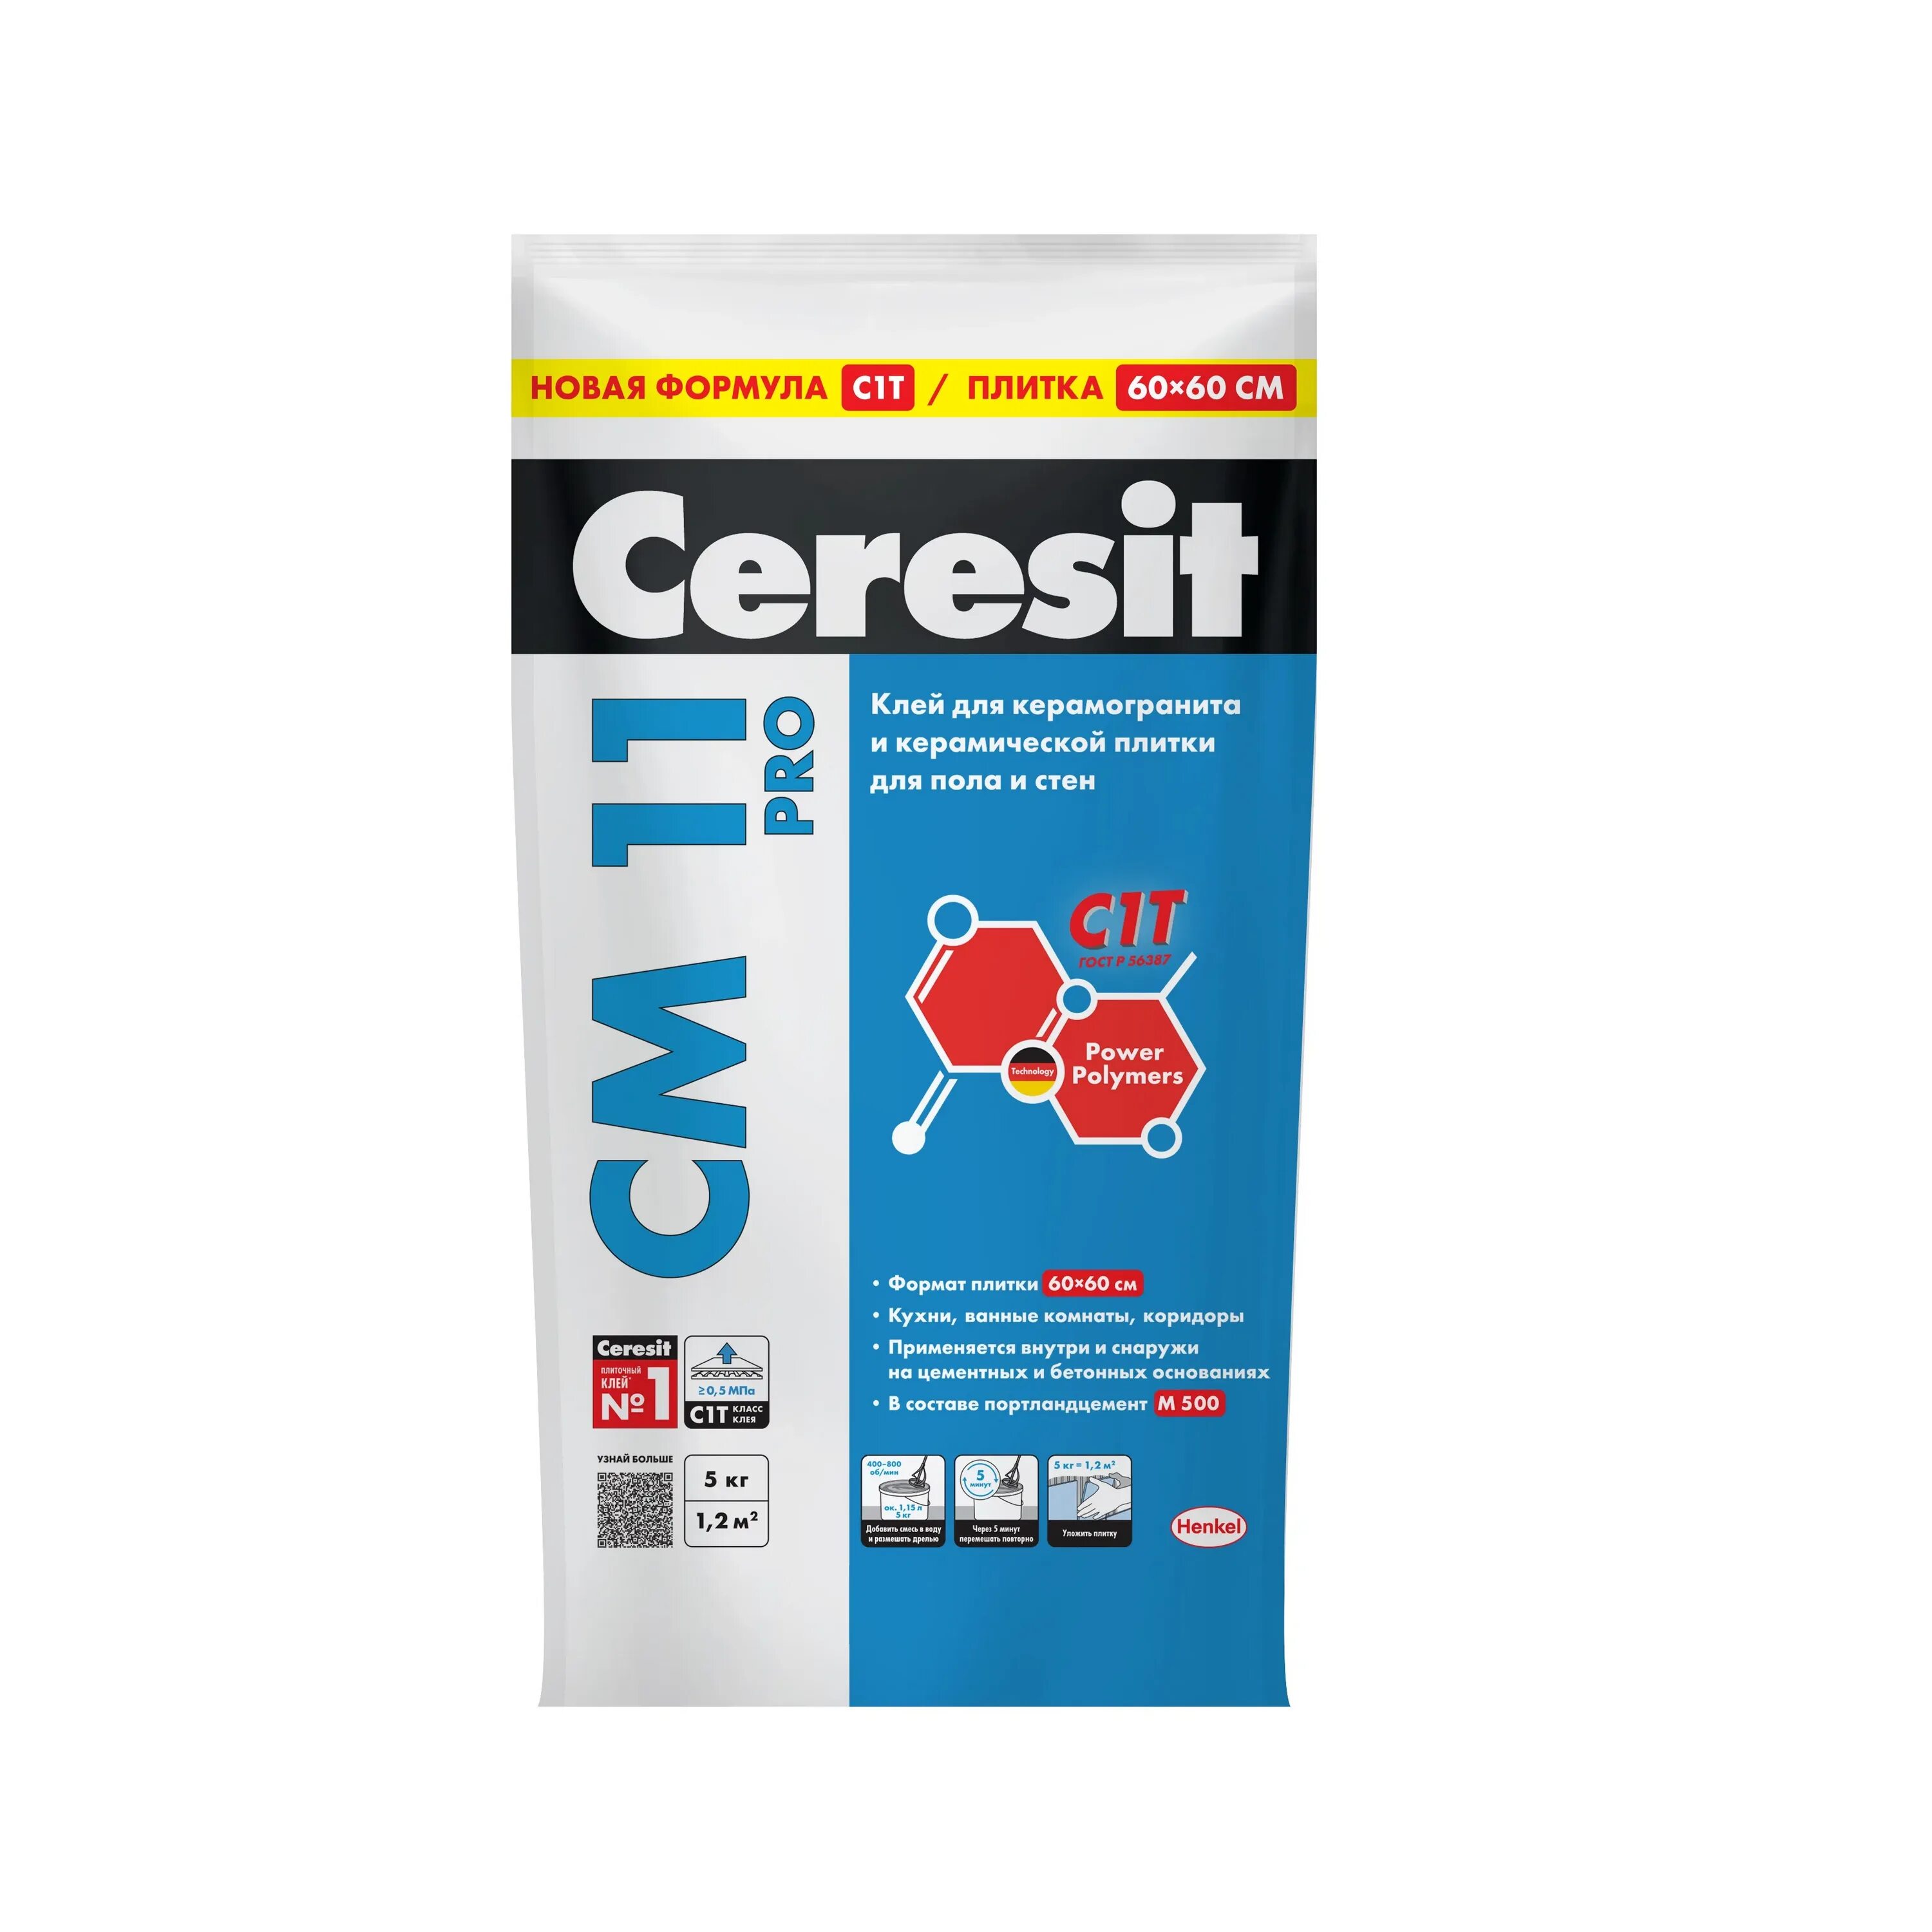 Ceresit cm 11 Pro. Плиточный клей Церезит см 11. Церезит 11 клей для плитки. Церезит 14 клей для плитки. Купить клей церезит см